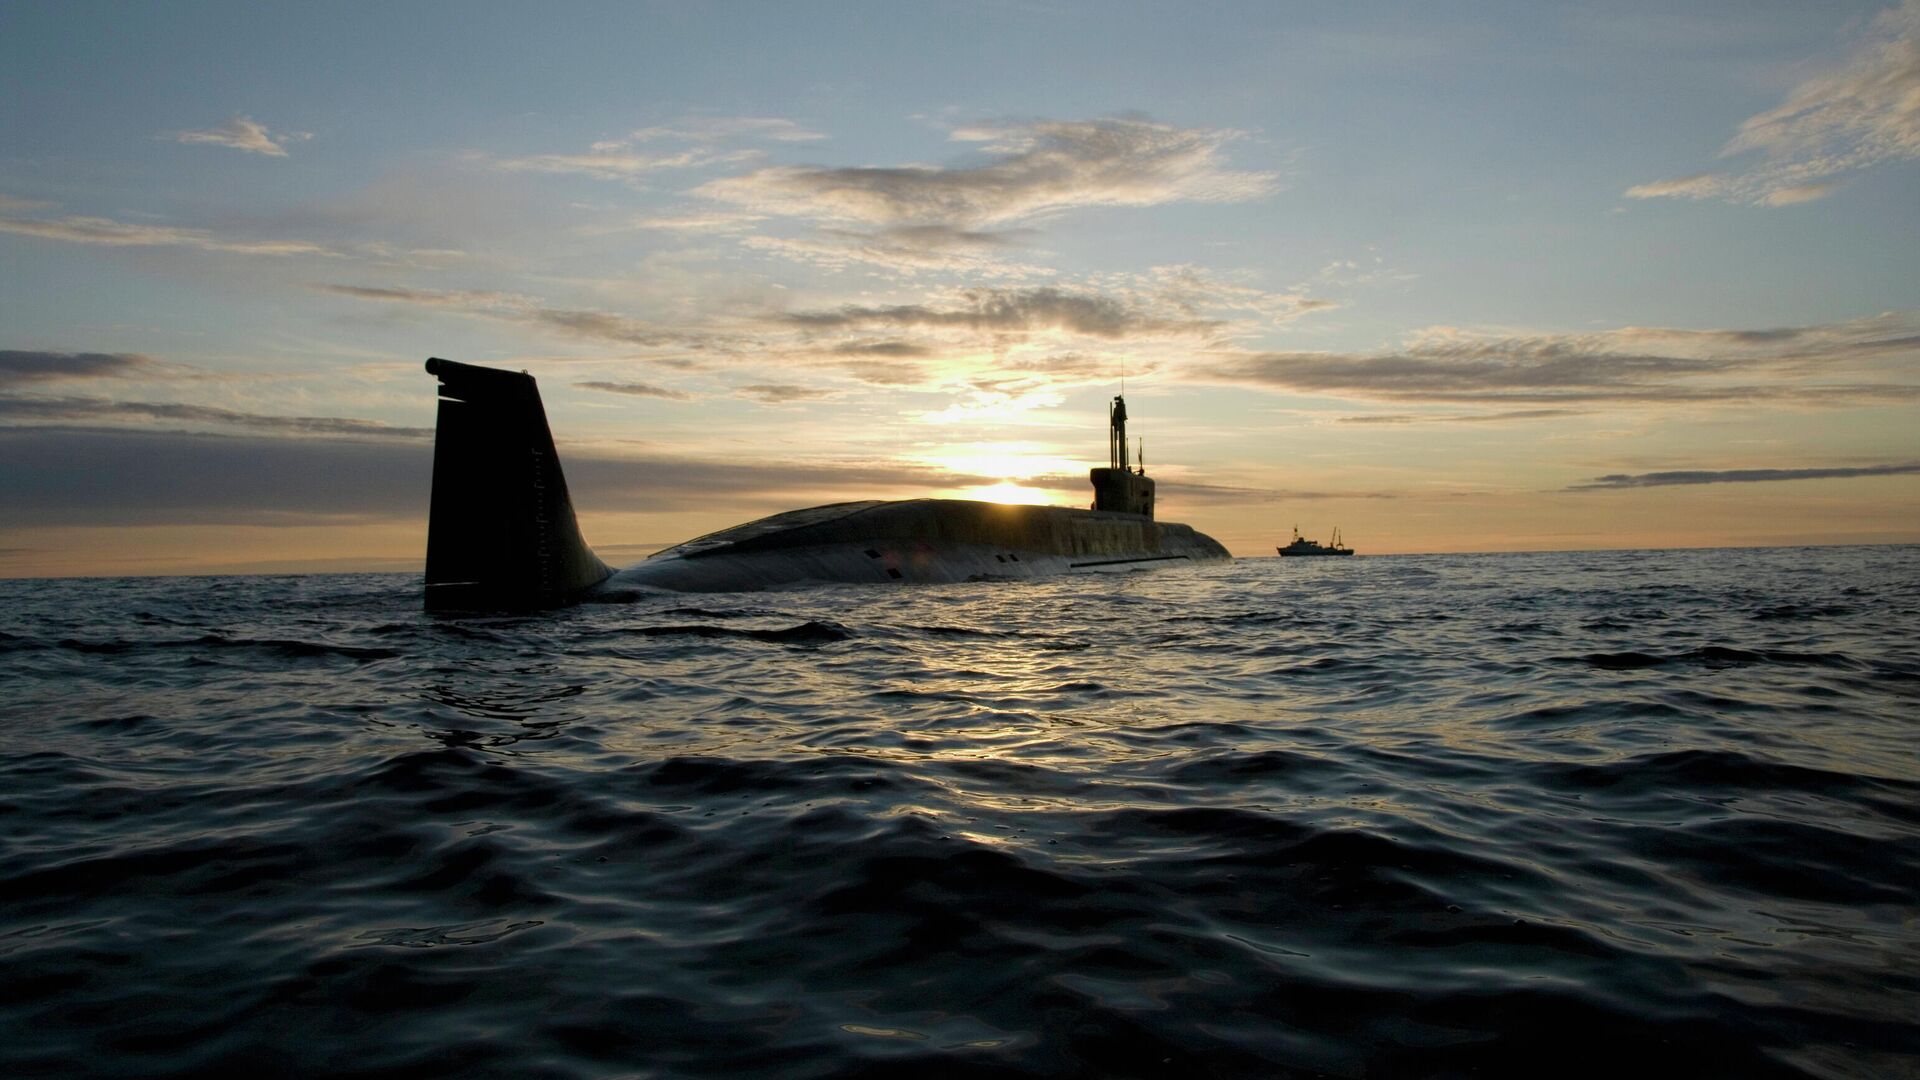 Атомная подводная лодка (АПЛ) Юрий Долгорукий во время ходовых испытаний летом 2009 года - РИА Новости, 1920, 23.02.2021